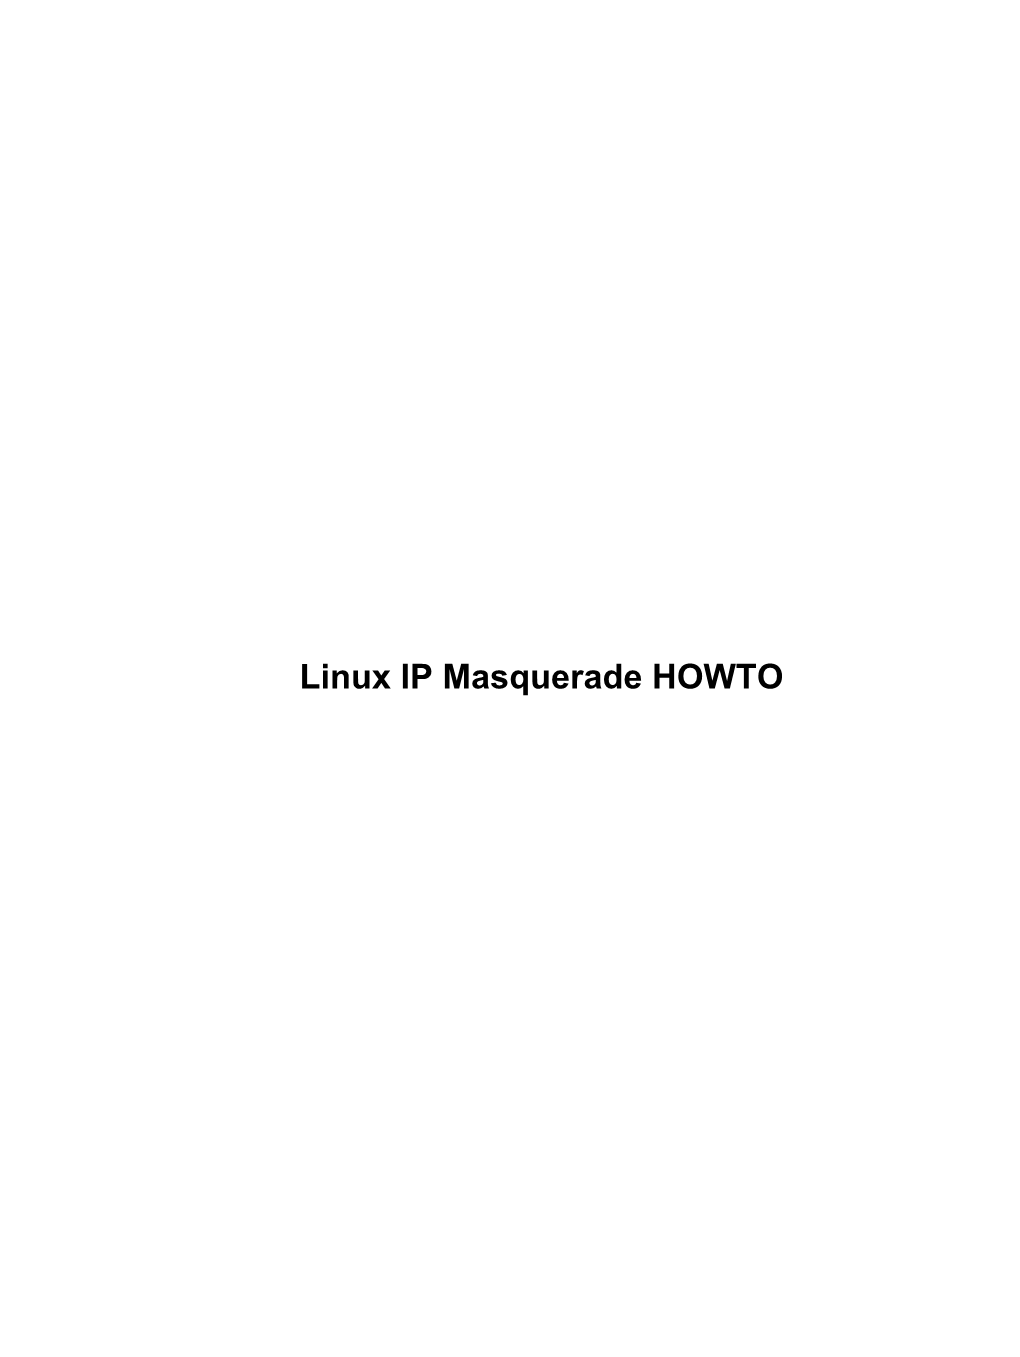 Linux IP Masquerade HOWTO Linux IP Masquerade HOWTO